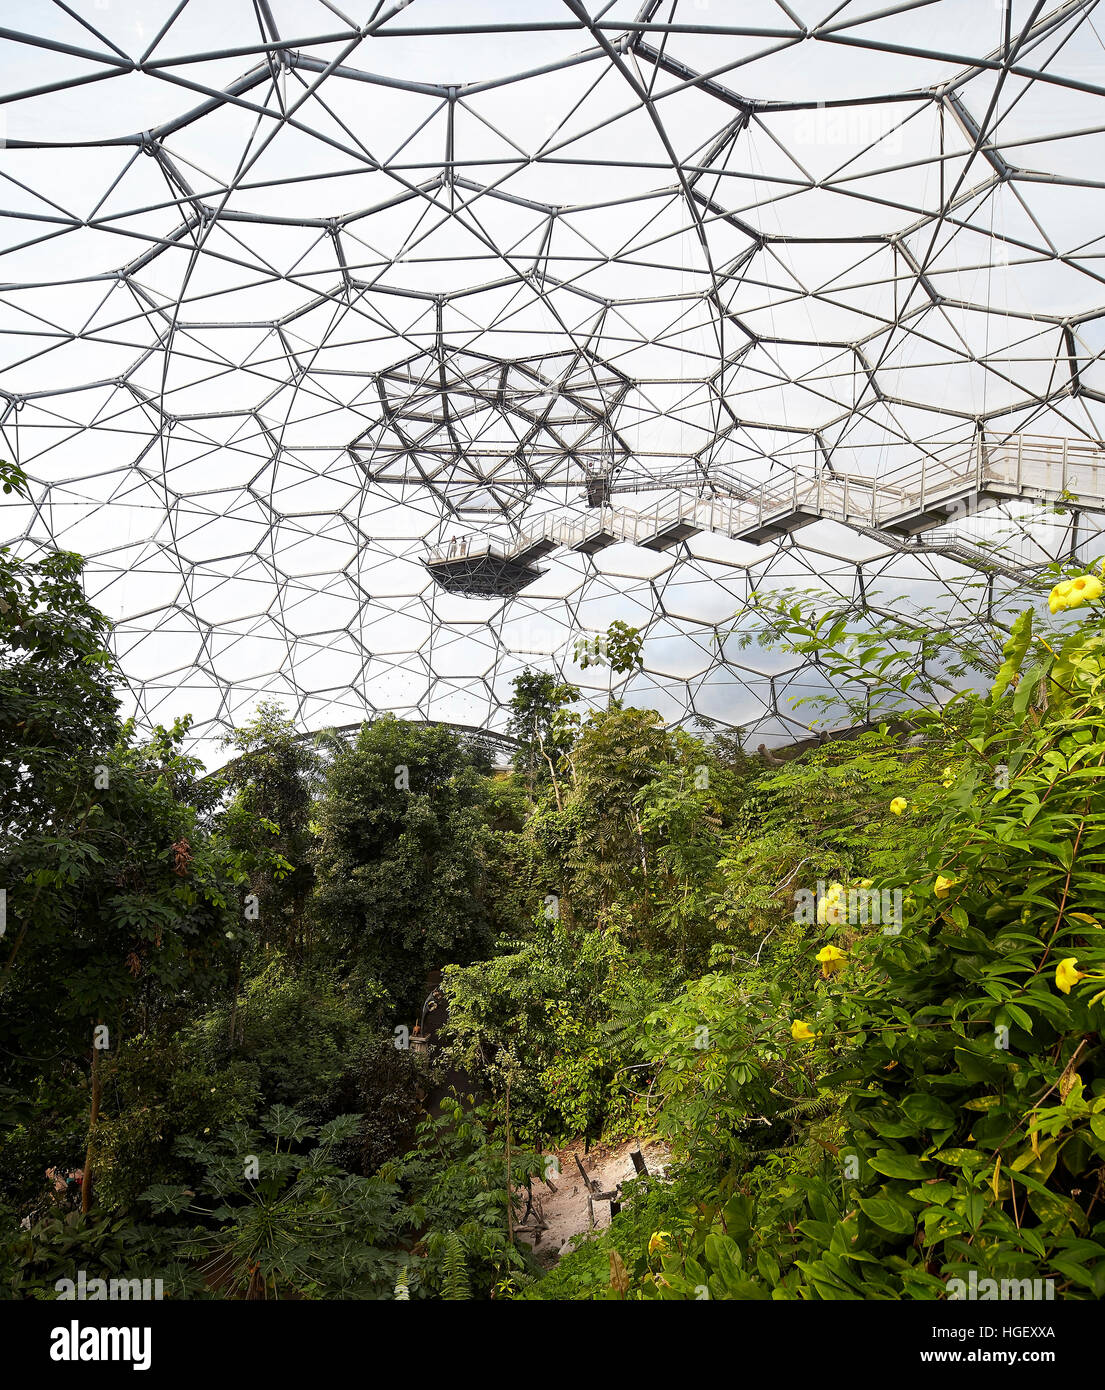 Plate-forme d'observation et le toit de biome structurwe. Eden Project, Bodelva, Royaume-Uni. Architecte : Grimshaw, 2016. Banque D'Images